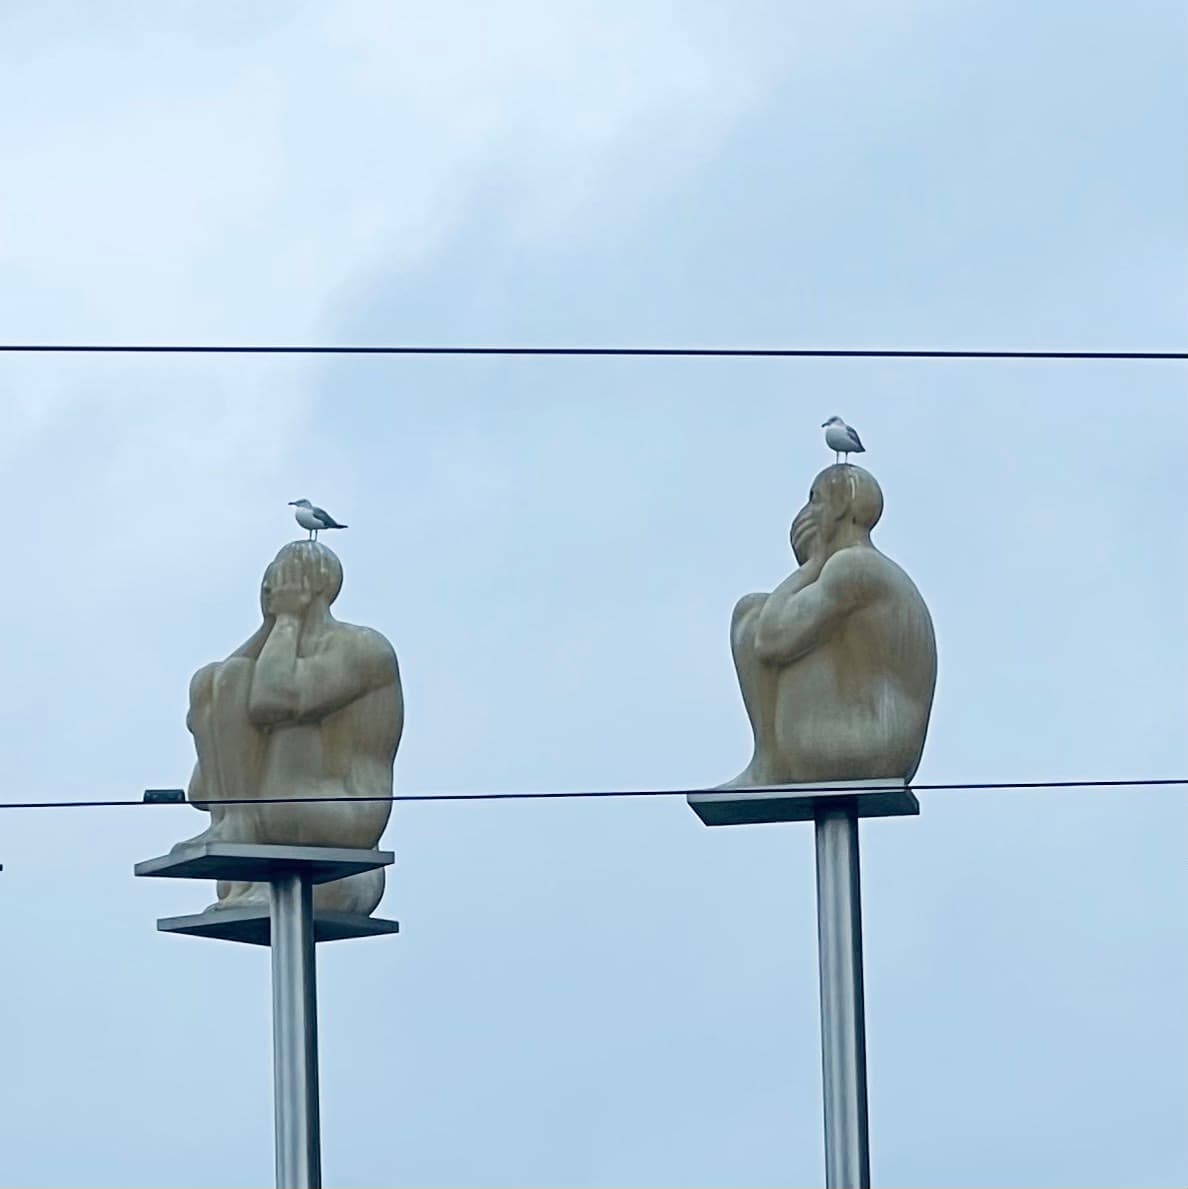 中央车站看到小鸟飞到雕塑上了